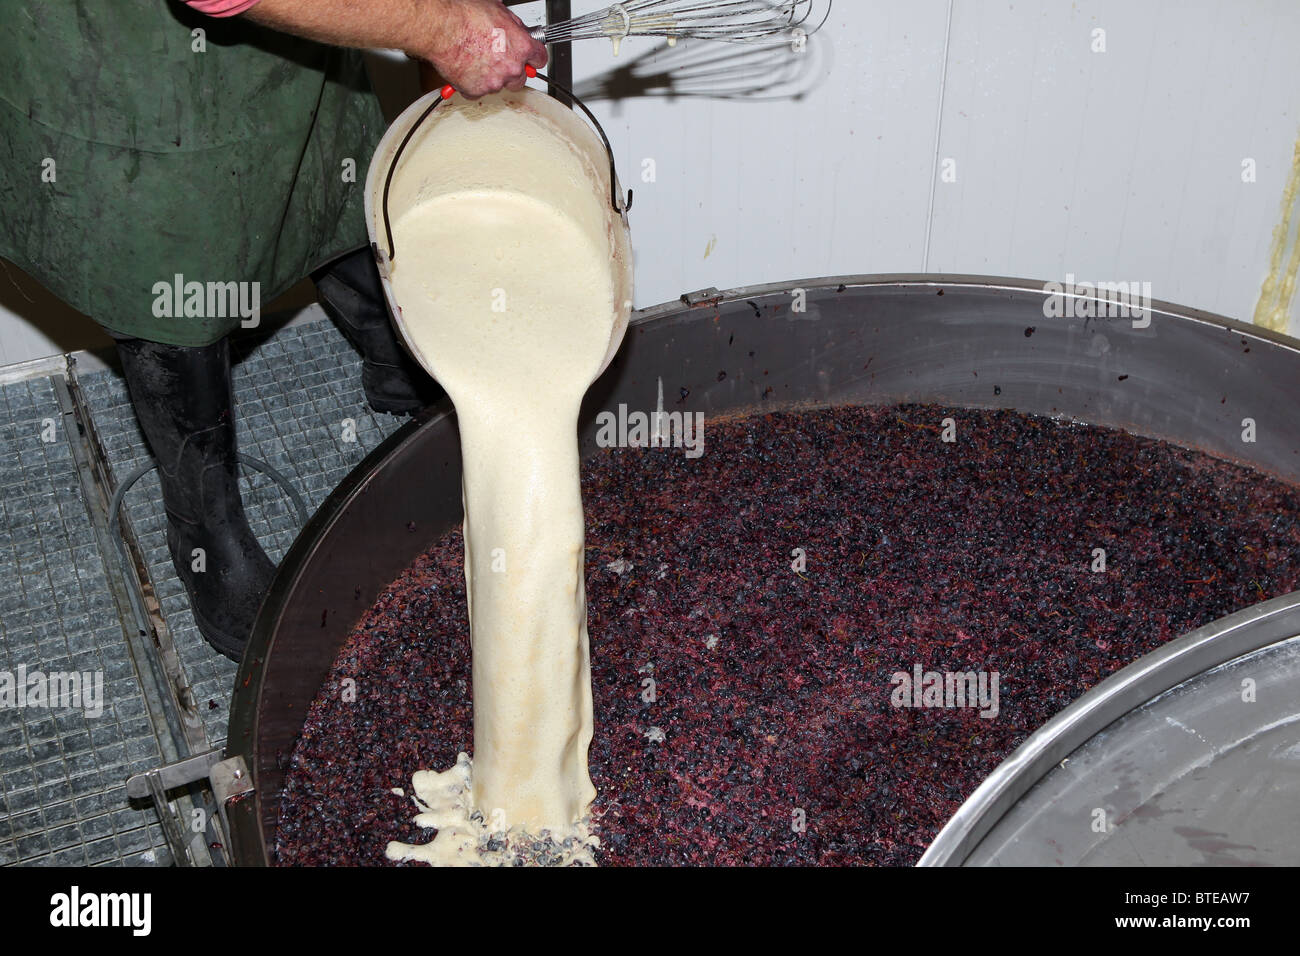 Verter la levadura en un IVA que contiene uvas trituradas en el proceso de elaboración de vino tinto. Foto de stock